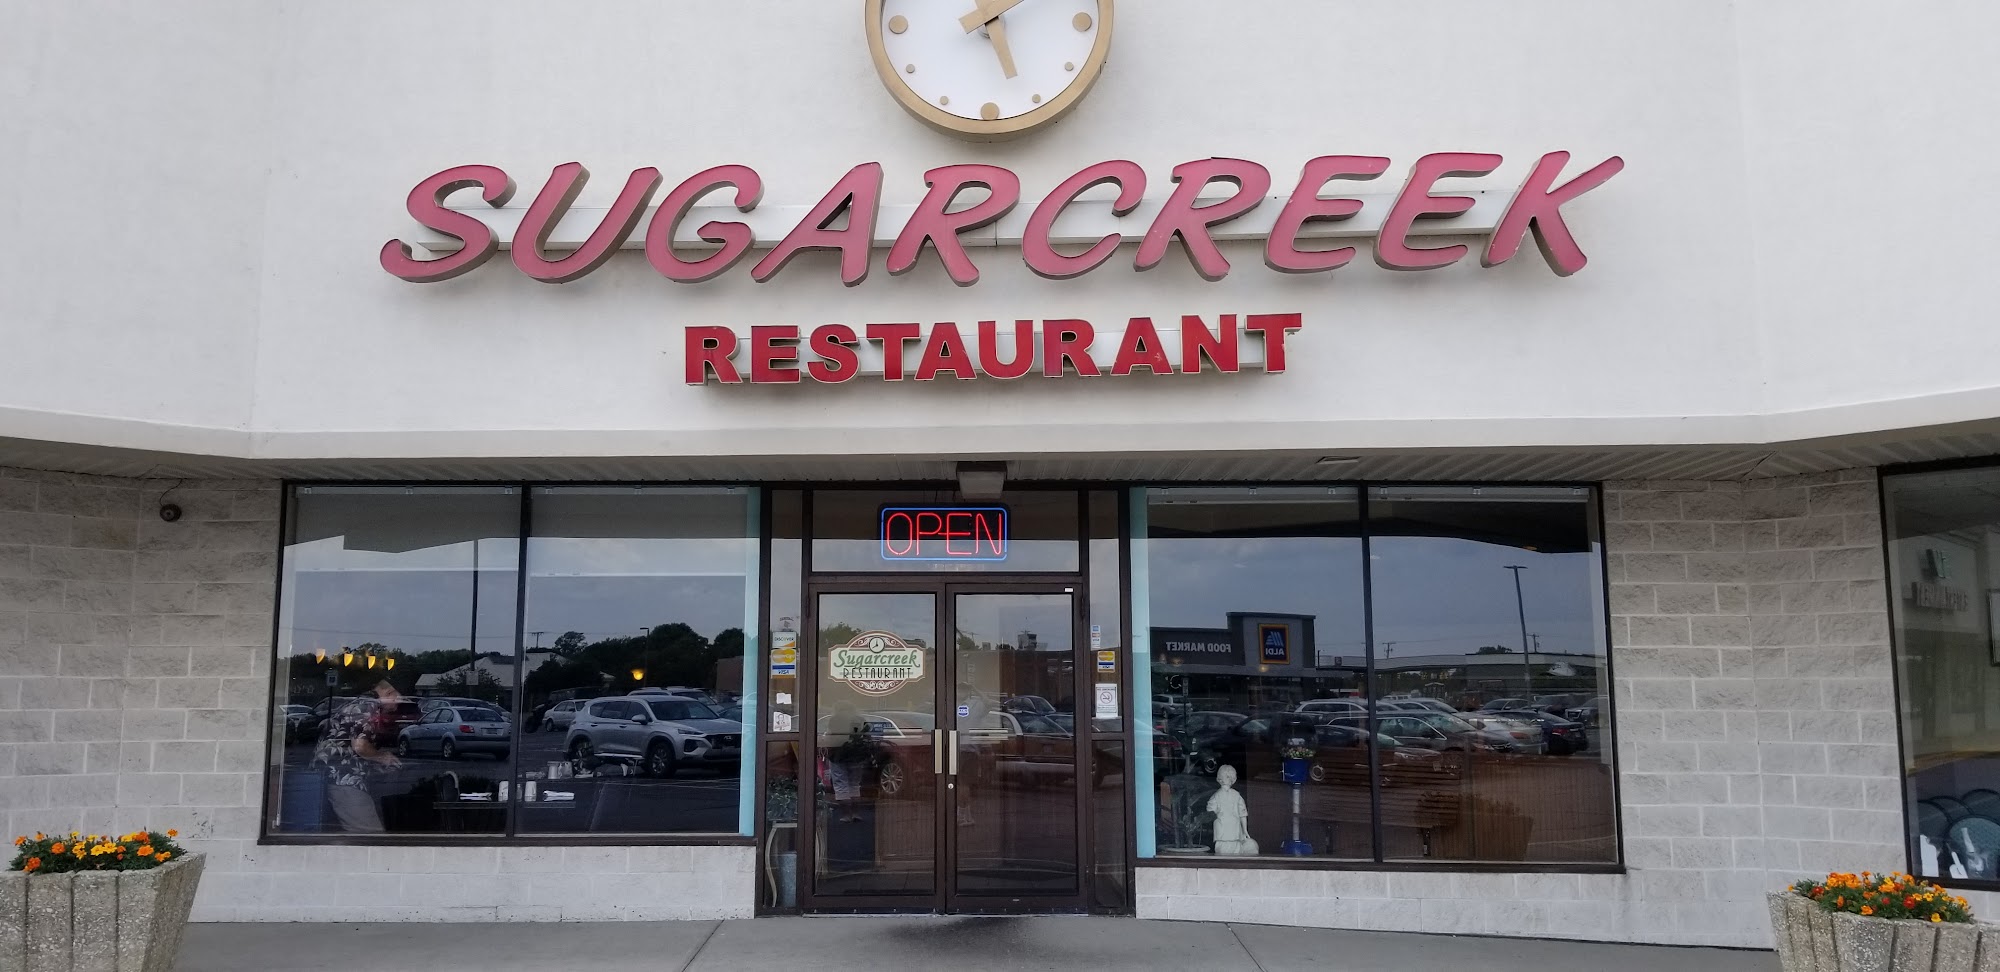 Sugarcreek Restaurant